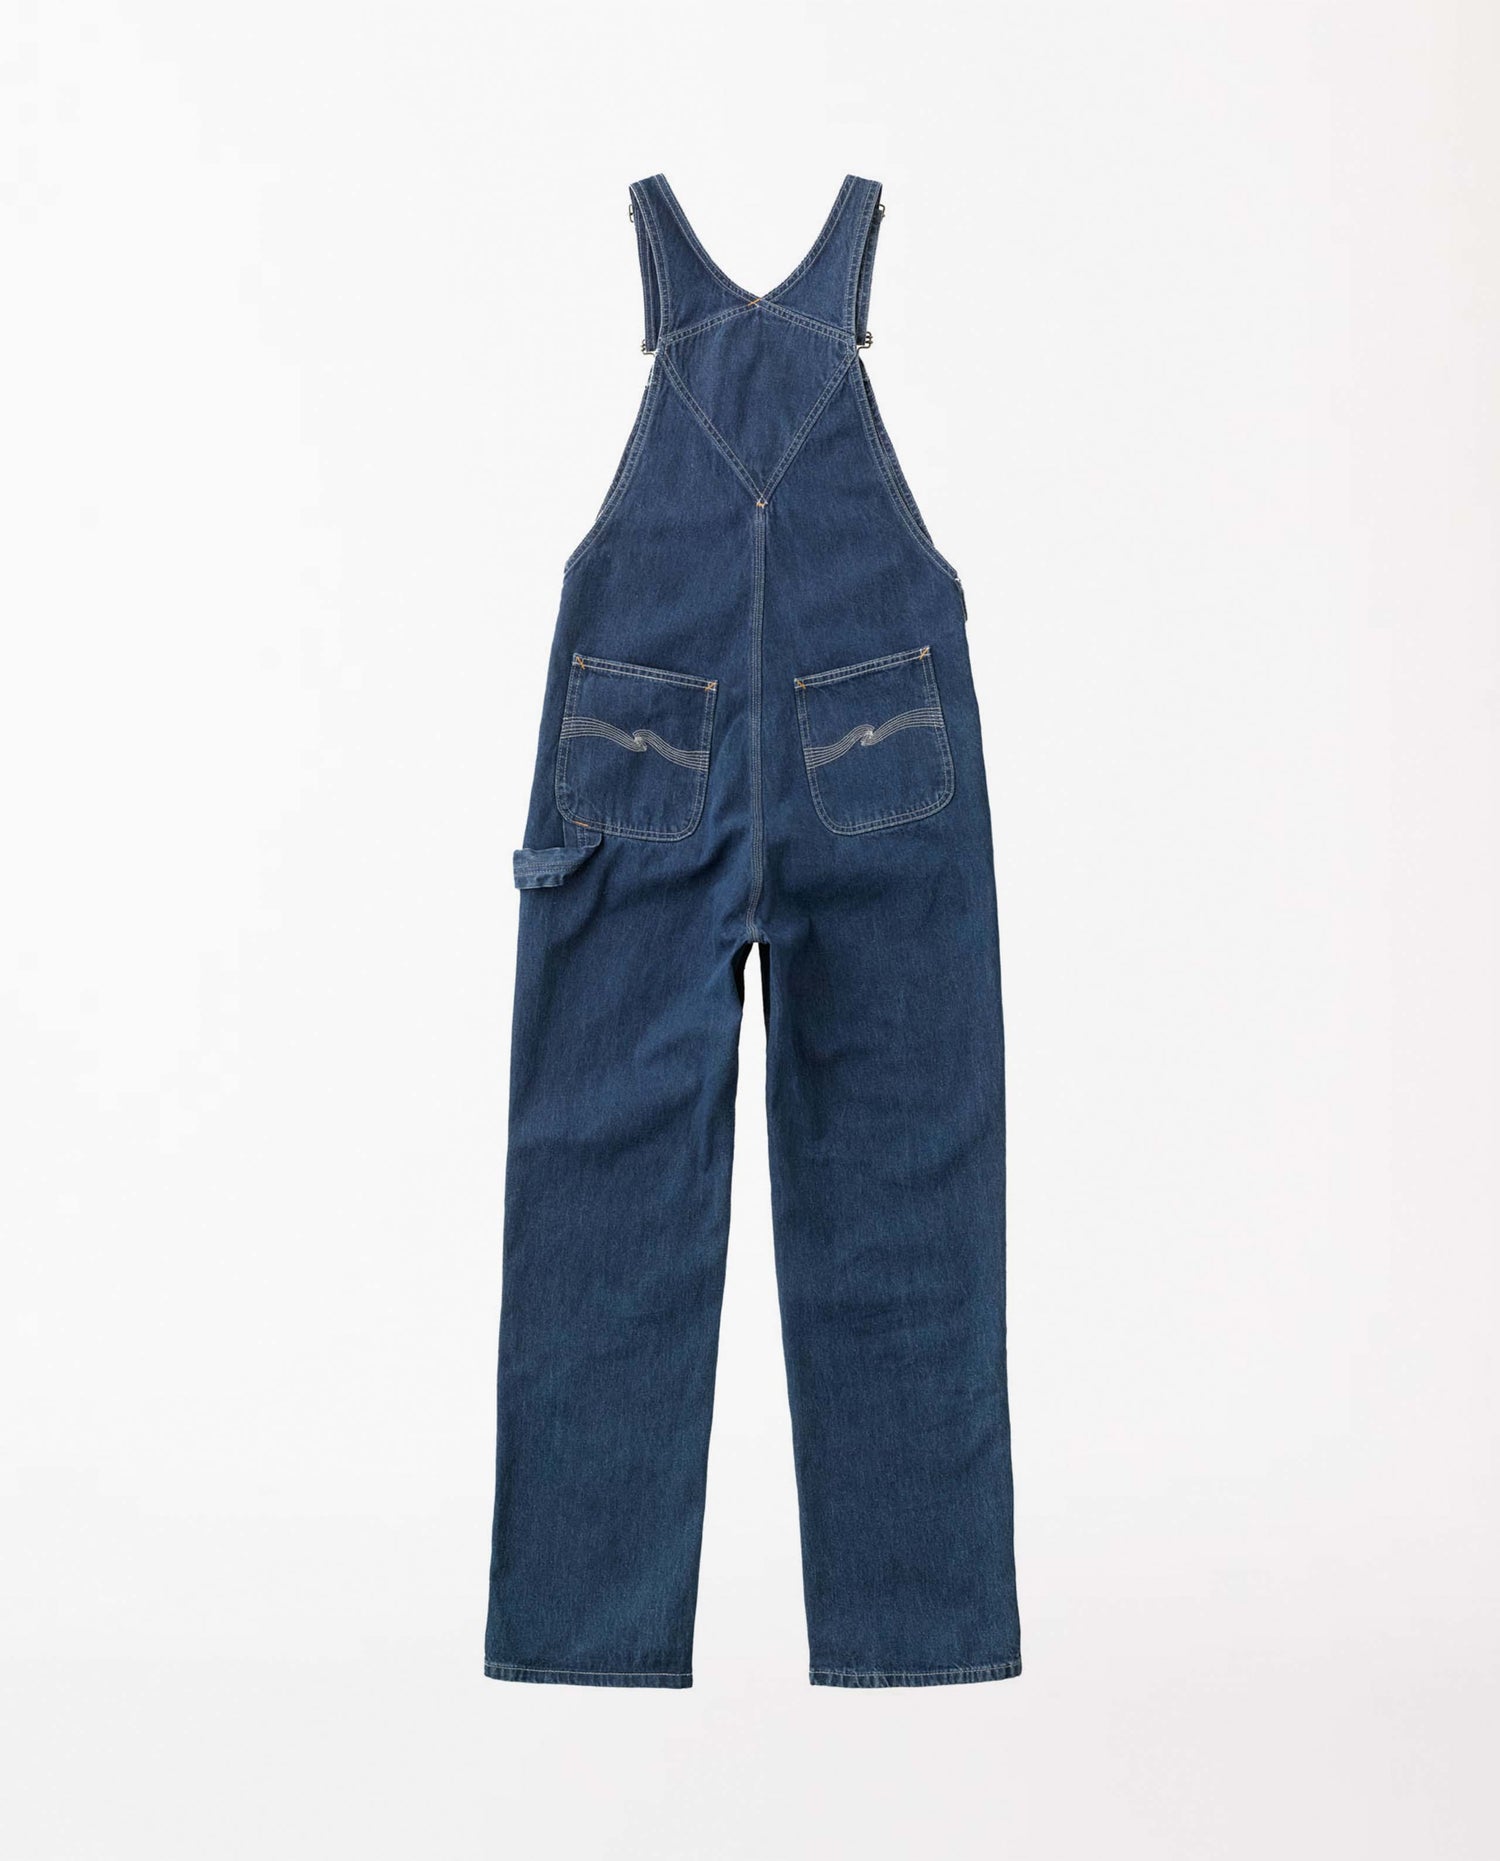 marché commun nudie jeans femme salopette jean coton biologique recyclé astrid bleu foncé